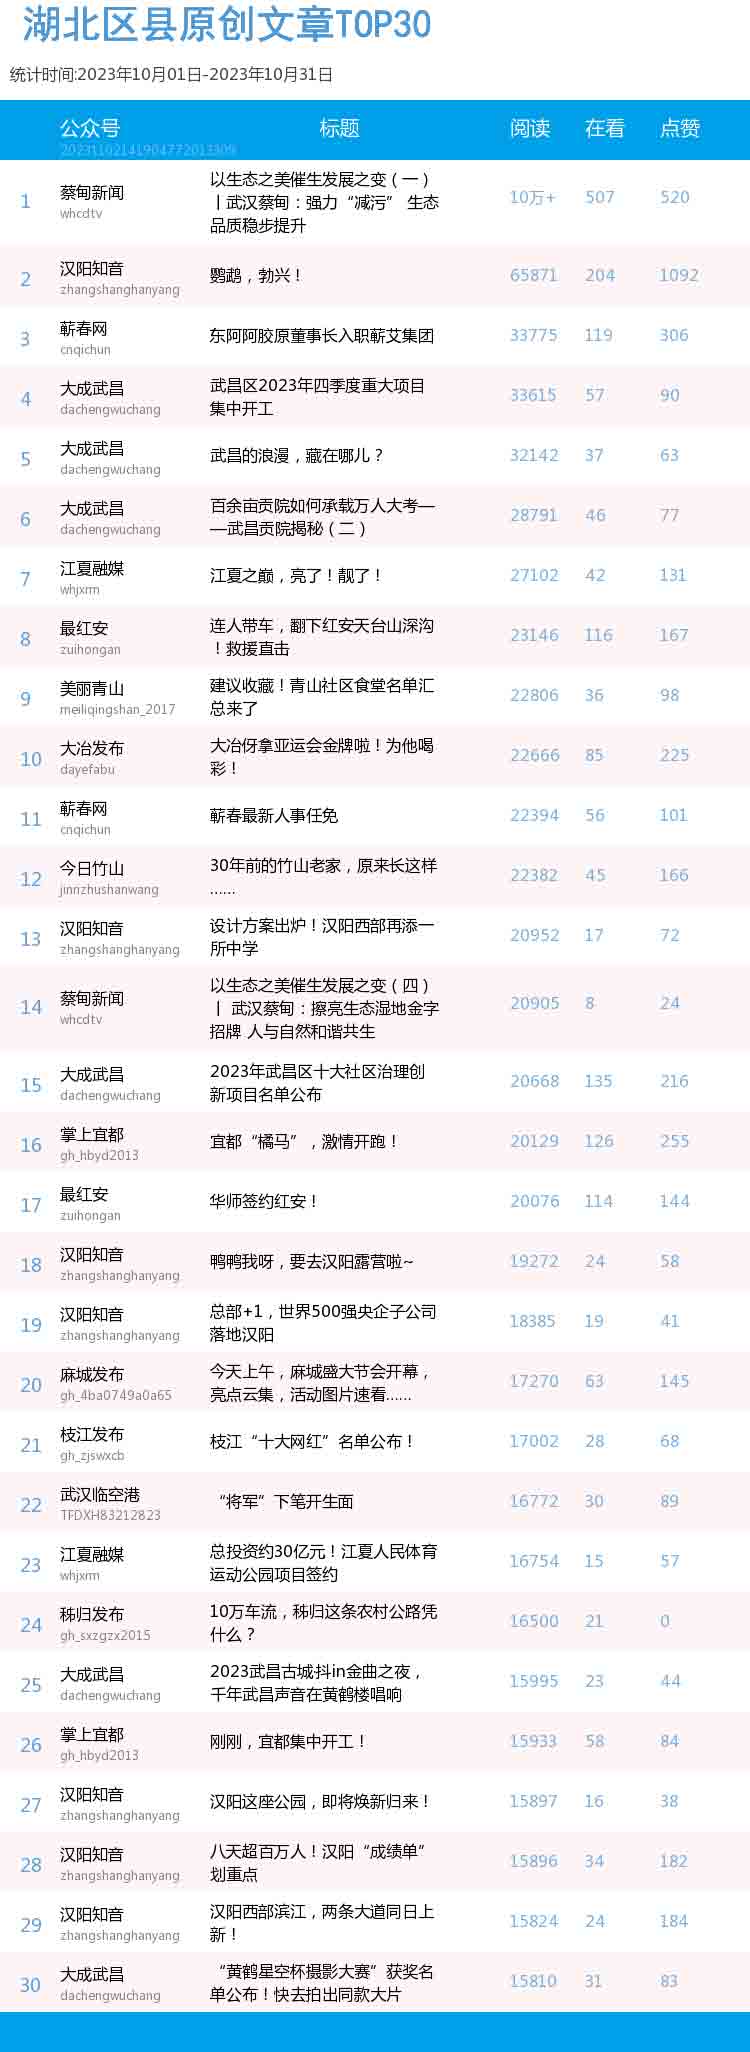 微信文章排行榜_榜单|SBS微信公众号九月影响力排行榜